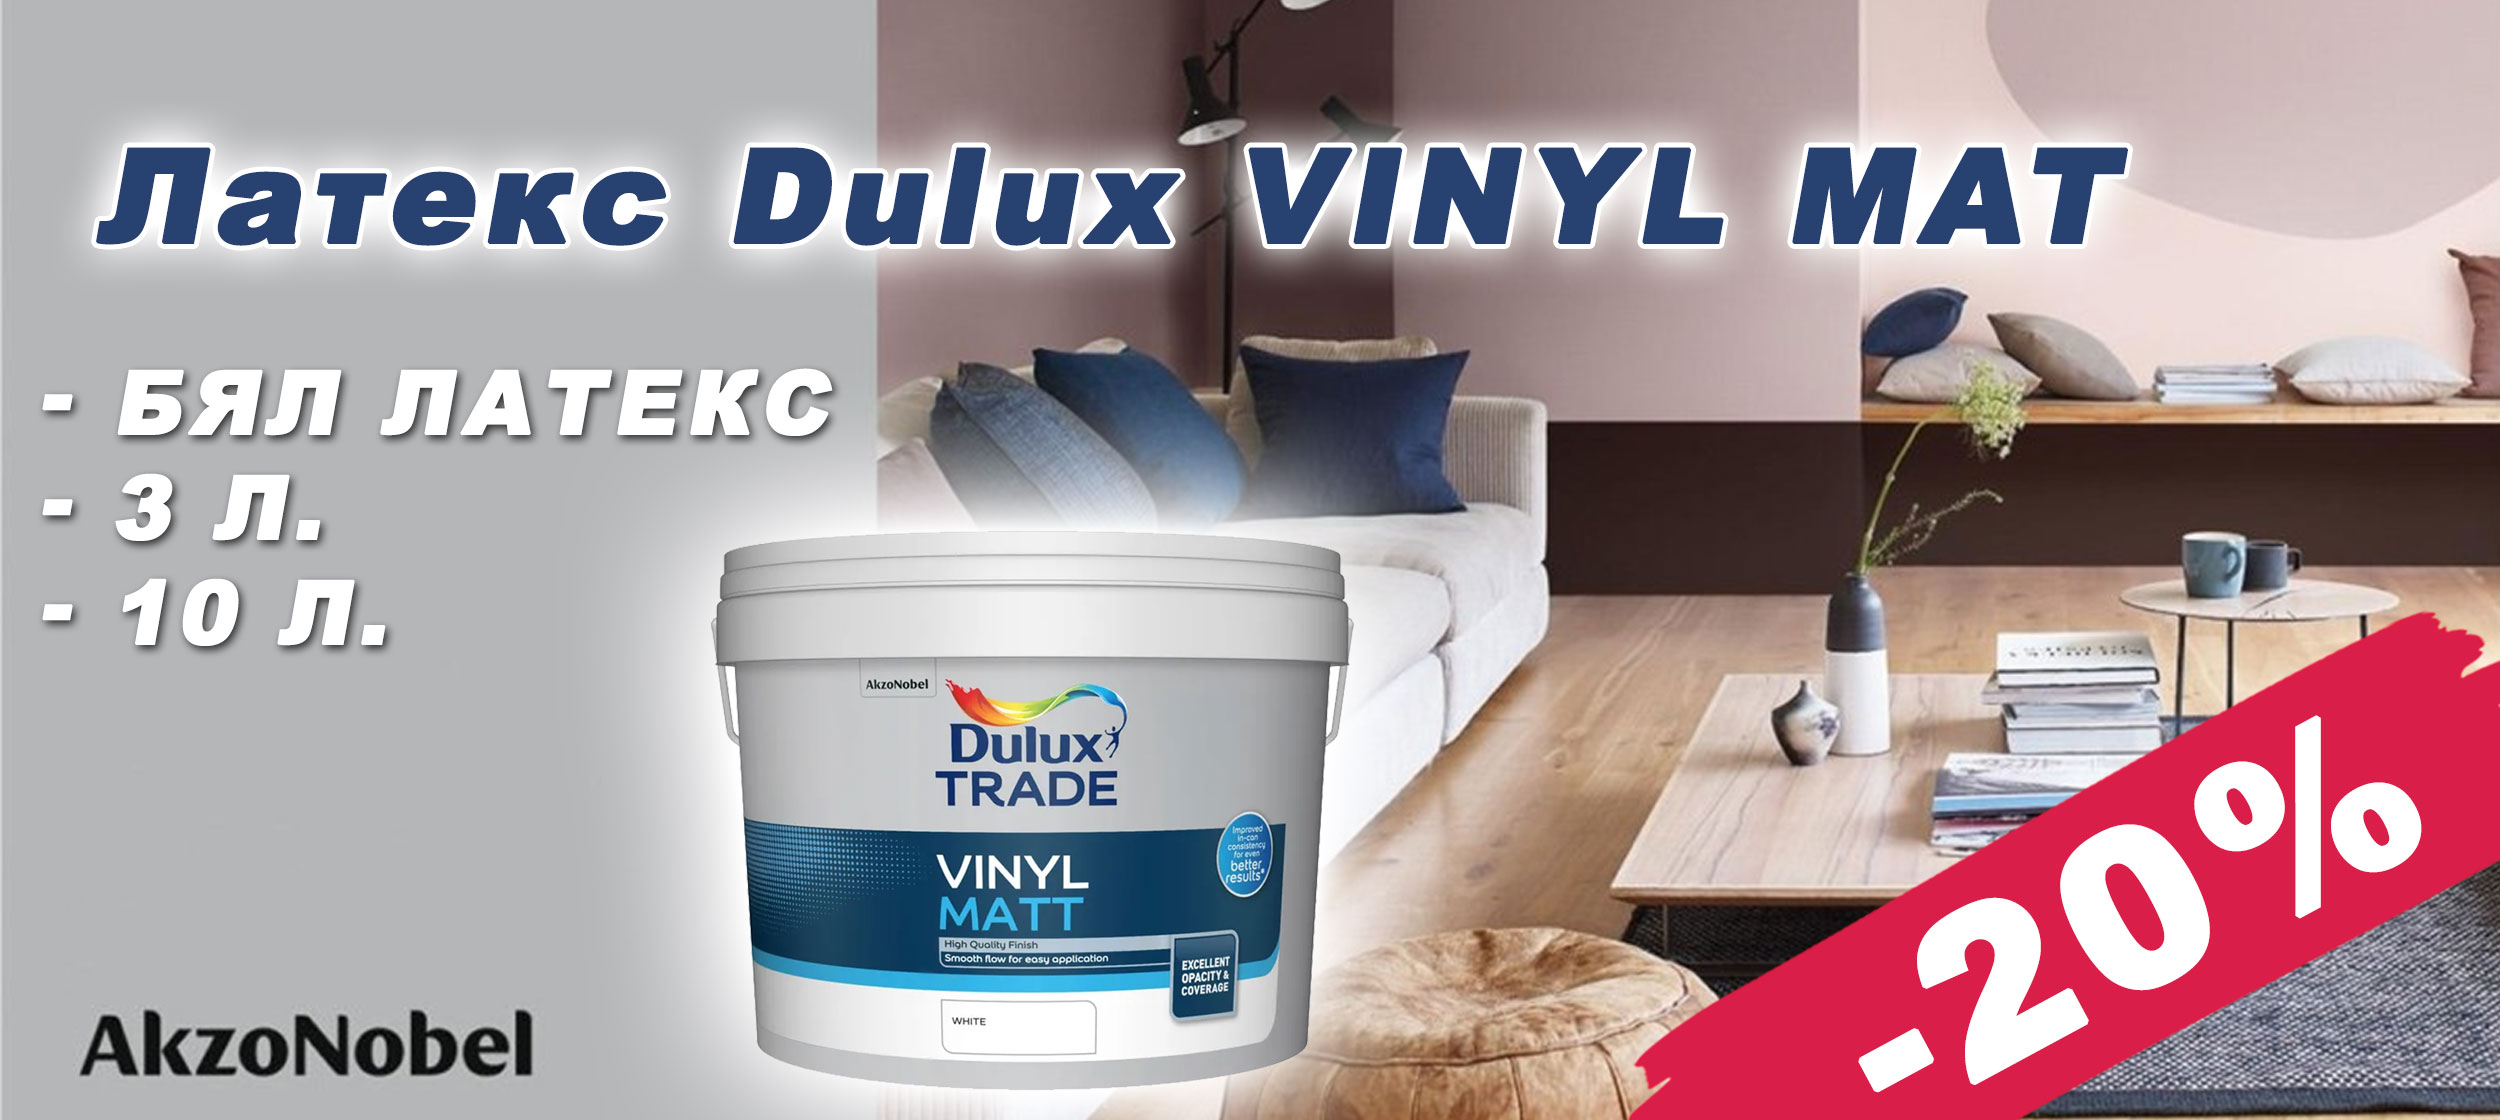 Бял латекс Dulux Vinyl Mat с 20% отстъпка